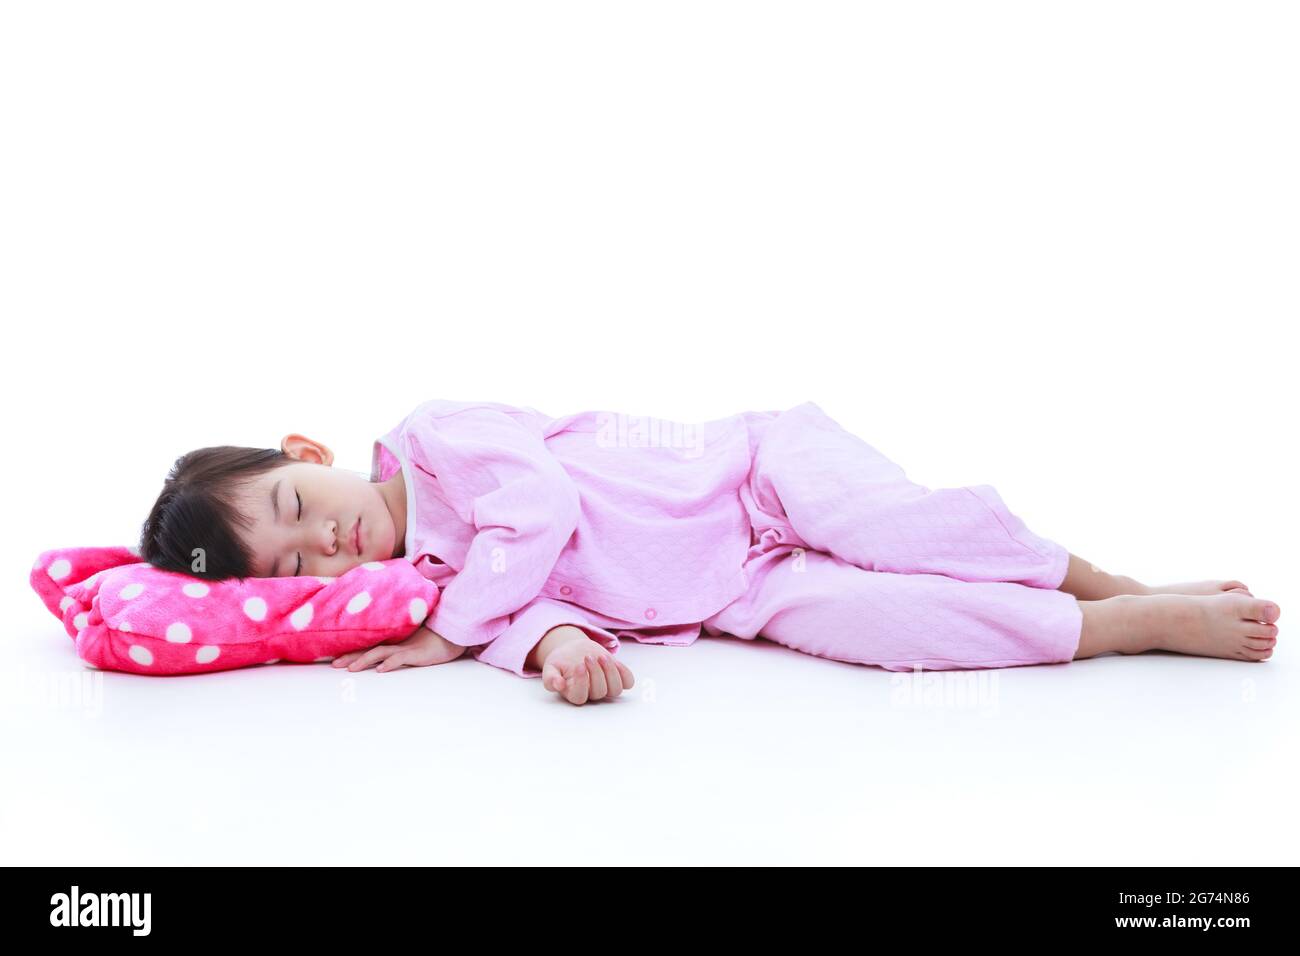 Ganzkörper. Gesundes Kinderkonzept. Kleines asiatisches Kind schläft friedlich. Liebenswert Mädchen in rosa Schlafanzug unter ein Nickerchen. Isoliert auf weißem Hintergrund. Stockfoto